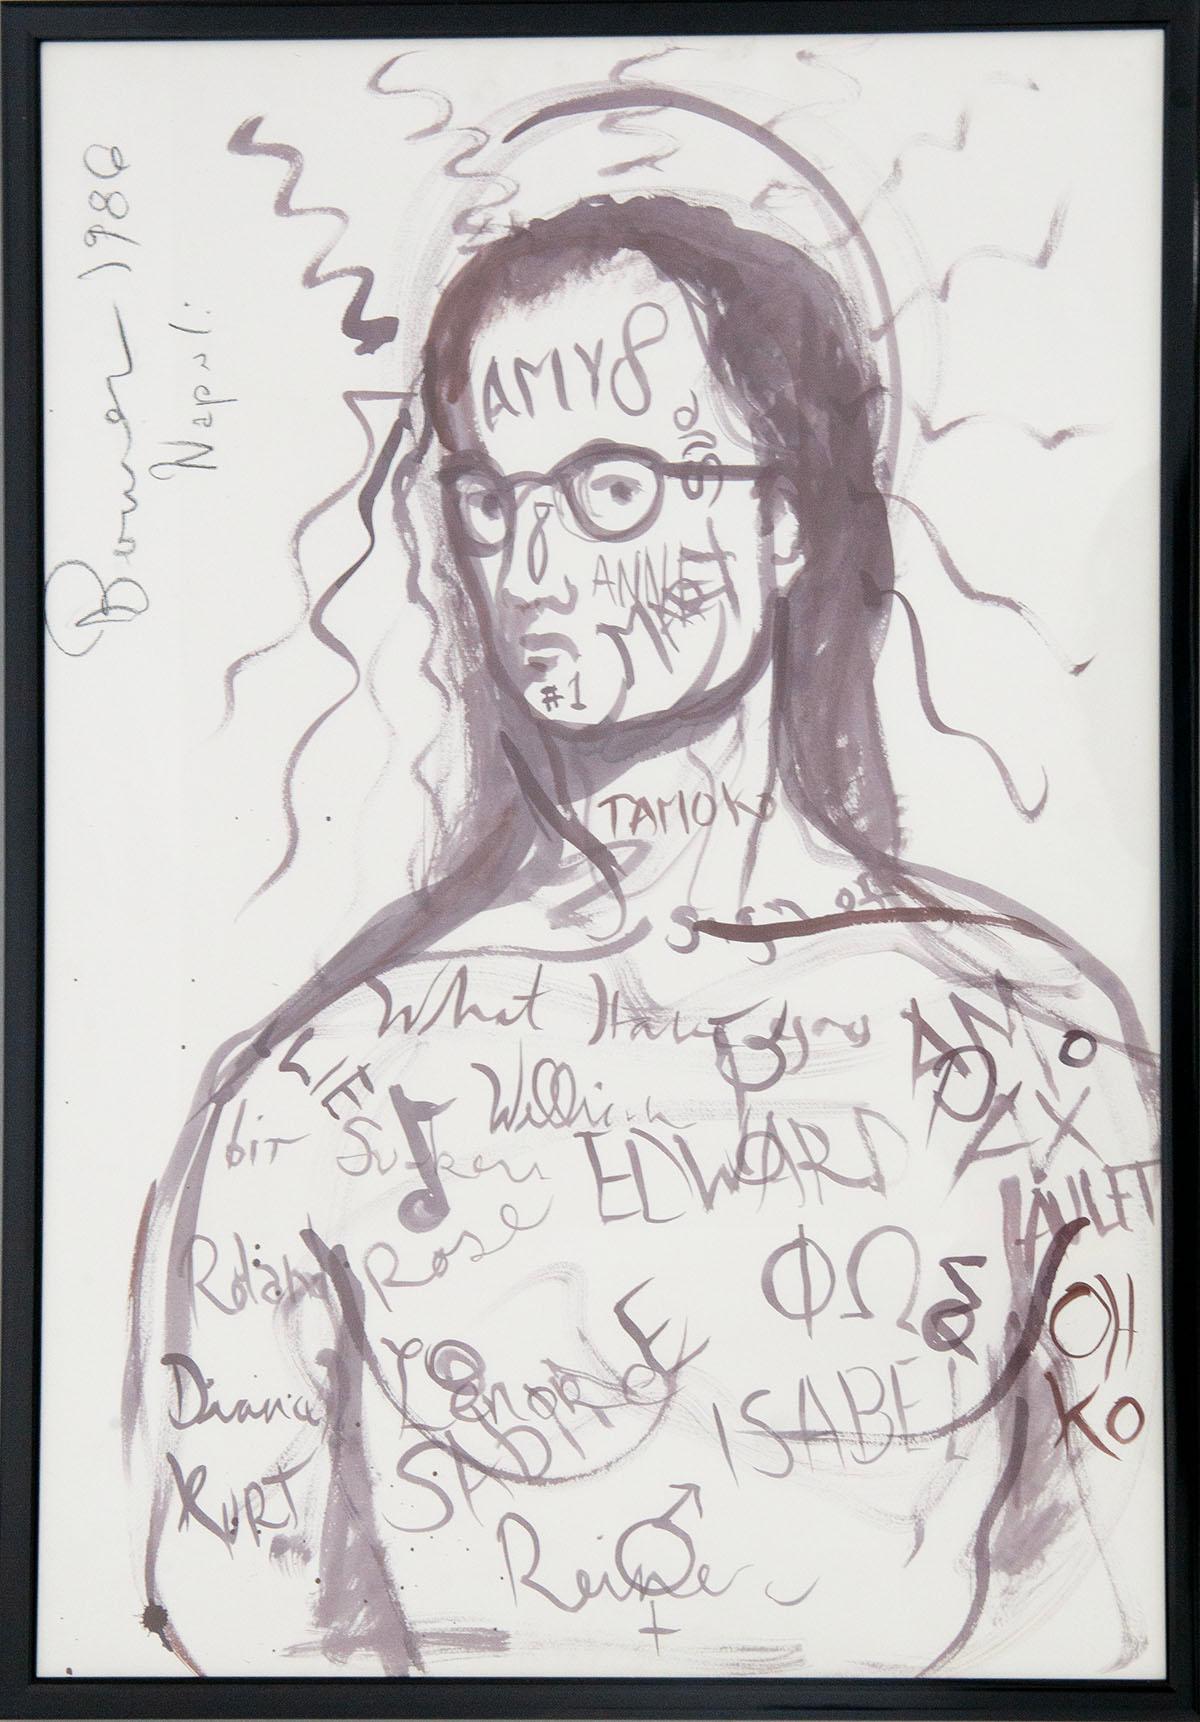 Peinture de BOWES DAVID, Untitled de 1986.
Détails : Signature et année en haut à gauche. Technique : dessin sur Fabriano Filigrane. 
Ses personnages ont un air théâtral, en particulier ceux qui ont l'apparence de Pierrot et Colombine et d'autres